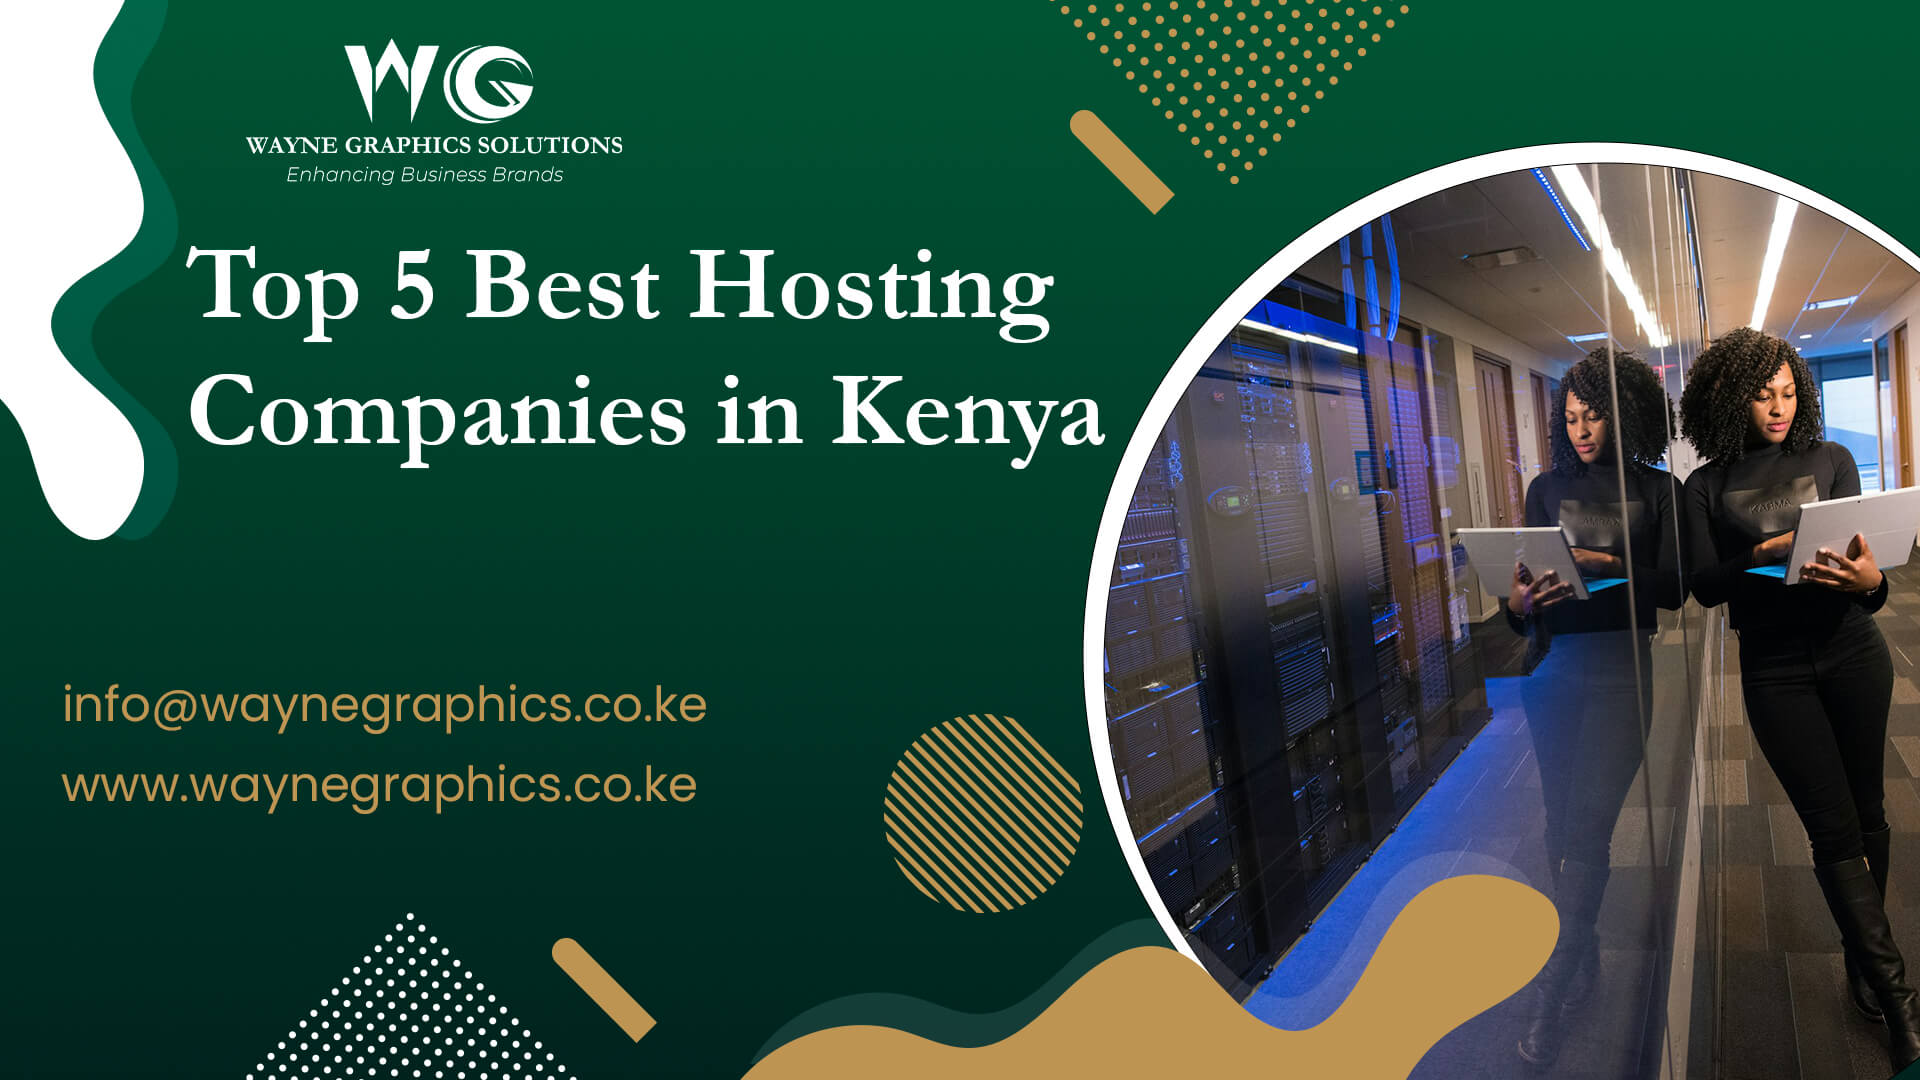 Top 5 Best Hosting Companies in Kenya